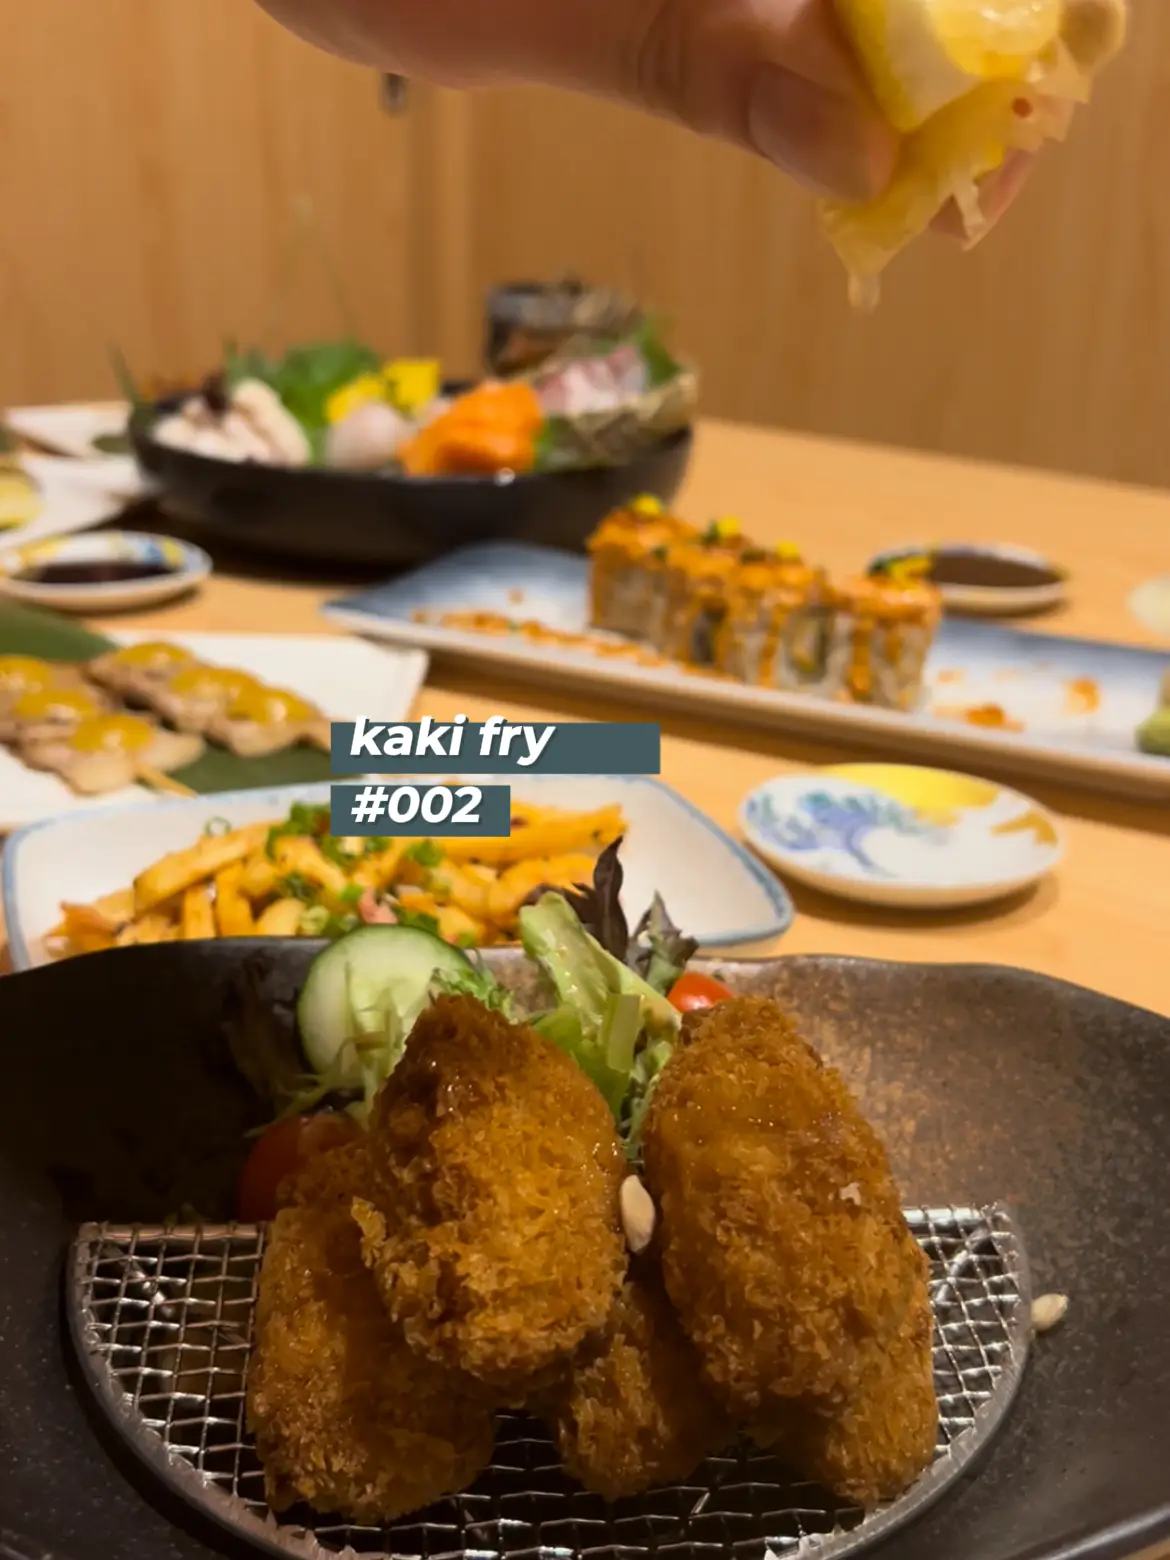 Affordable Japanese Restaurant at Golden Mile 🏮 's images(2)